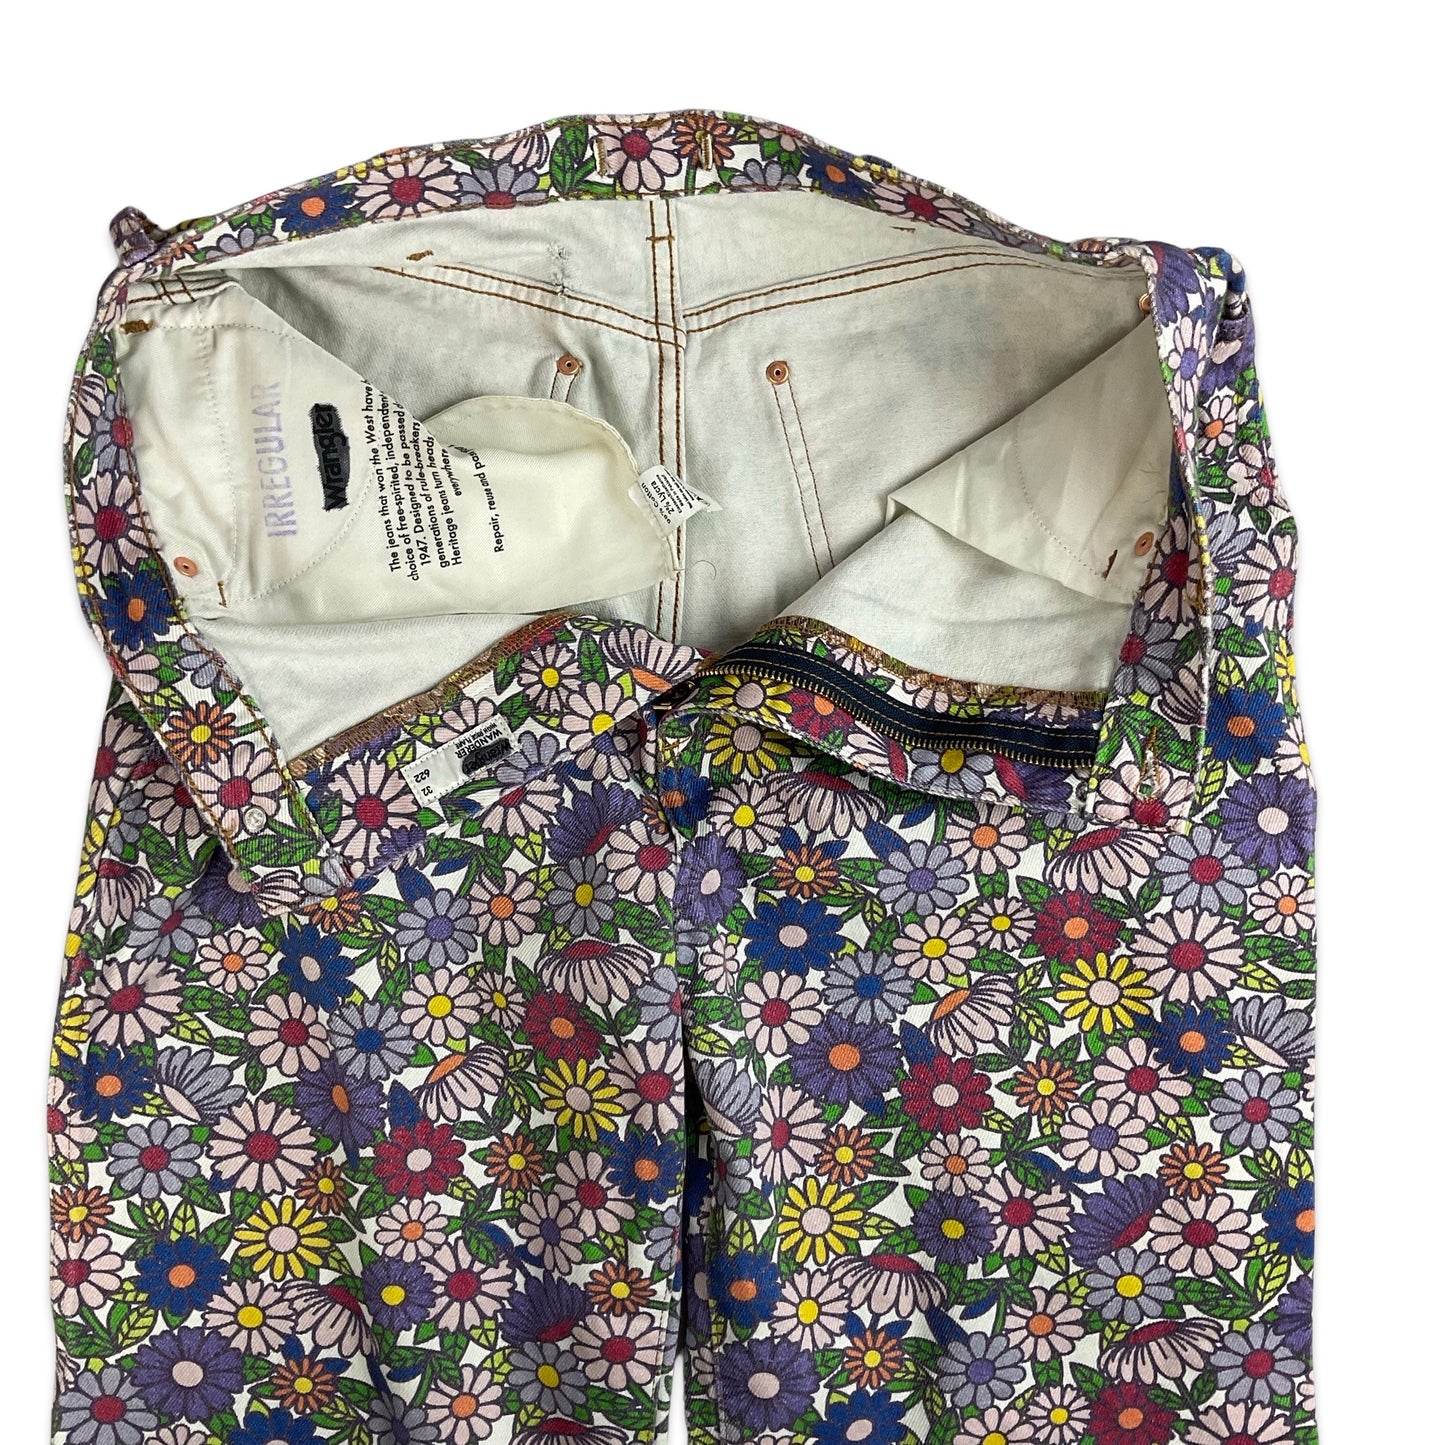 Vintage Wrangler Floral Flared Jeans